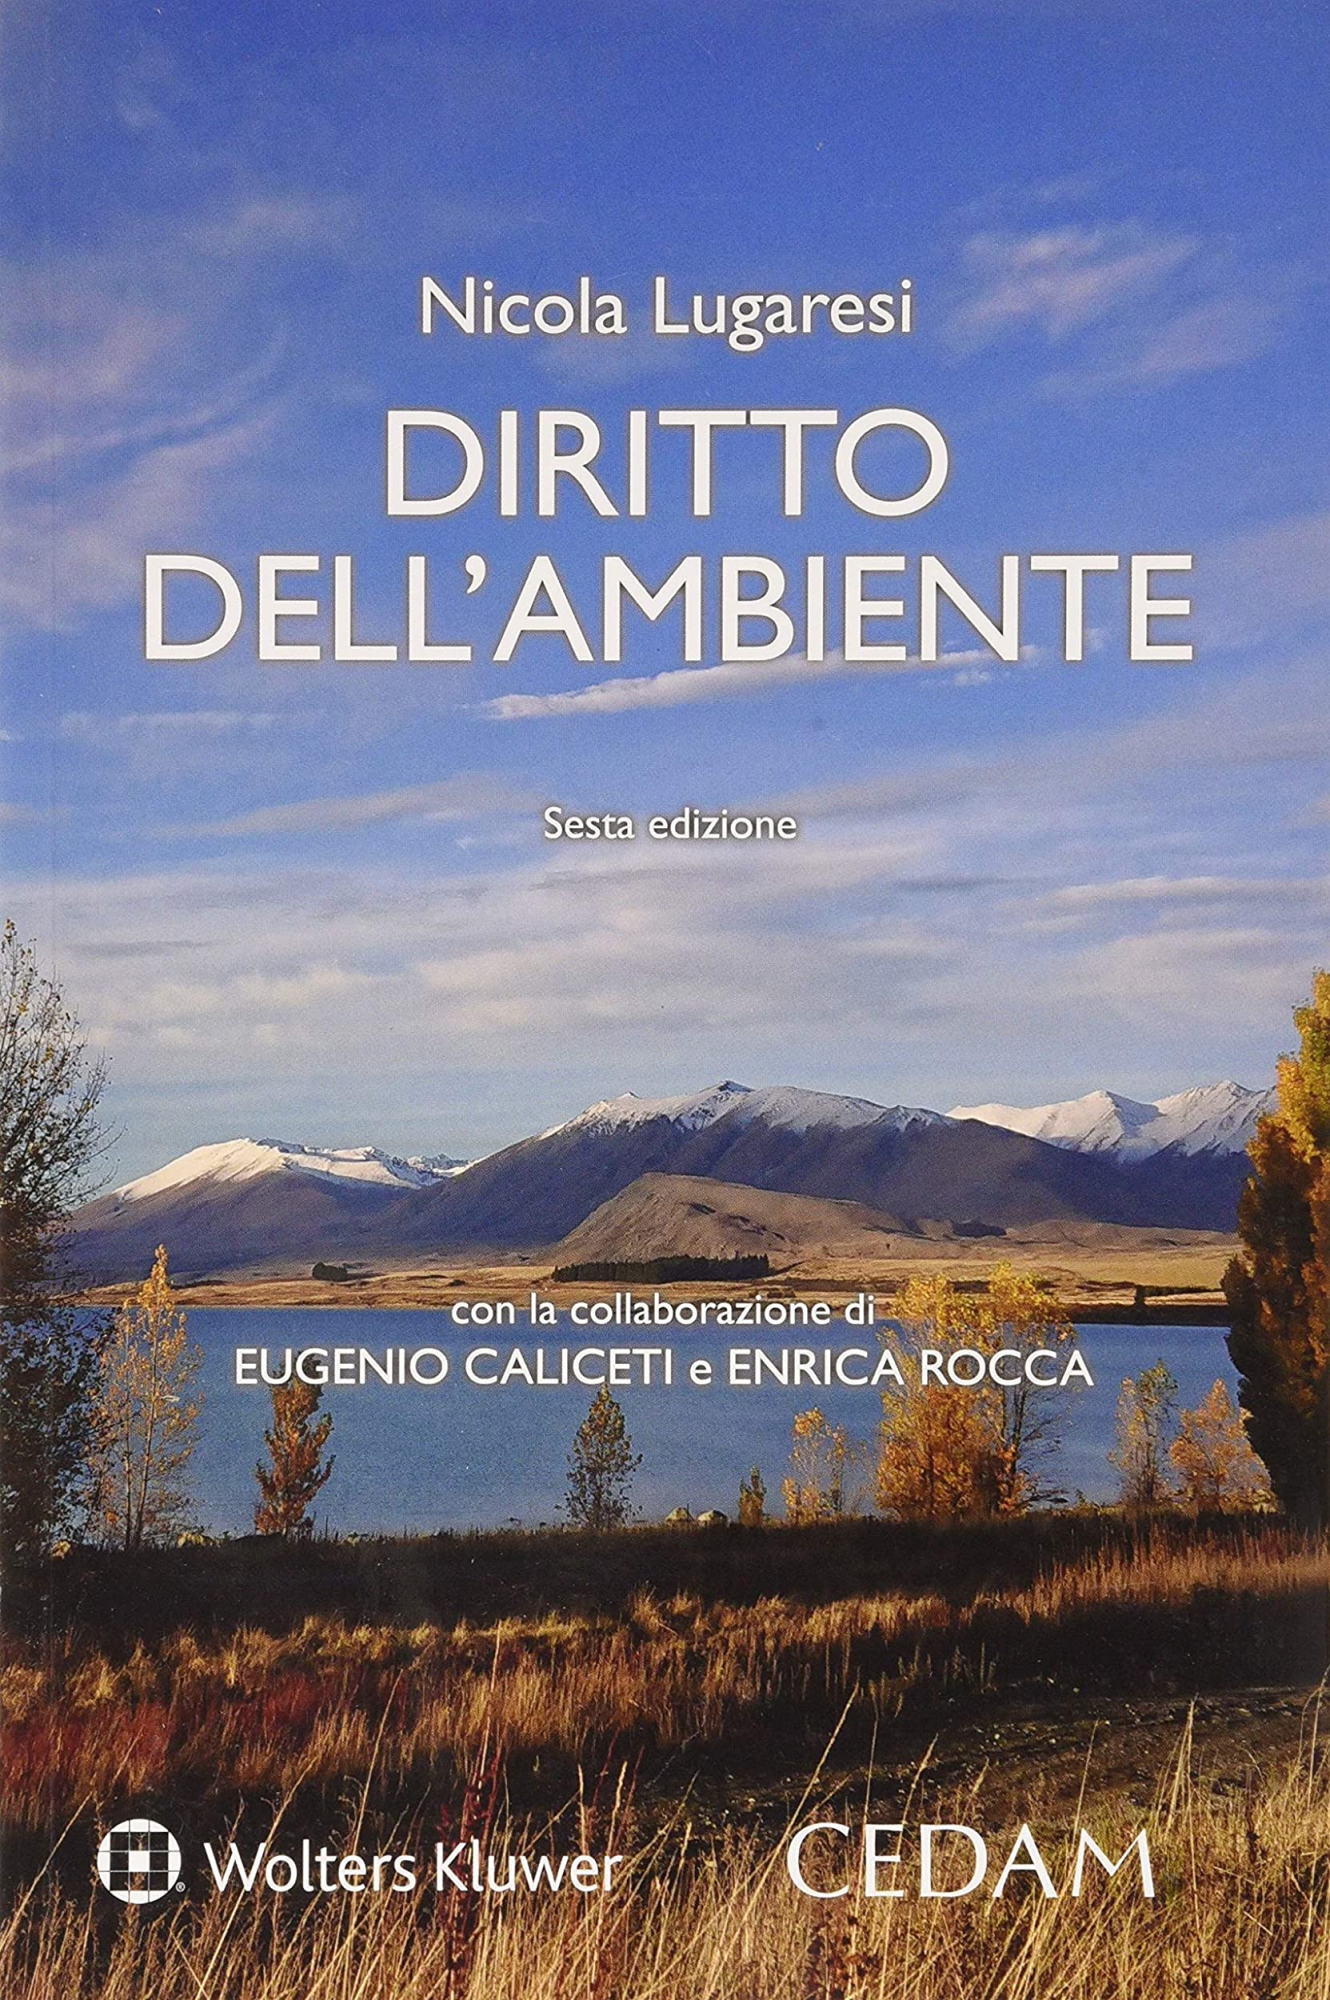 Libri Nicola Lugaresi - Diritto Dell'ambiente NUOVO SIGILLATO, EDIZIONE DEL 30/01/2020 SUBITO DISPONIBILE